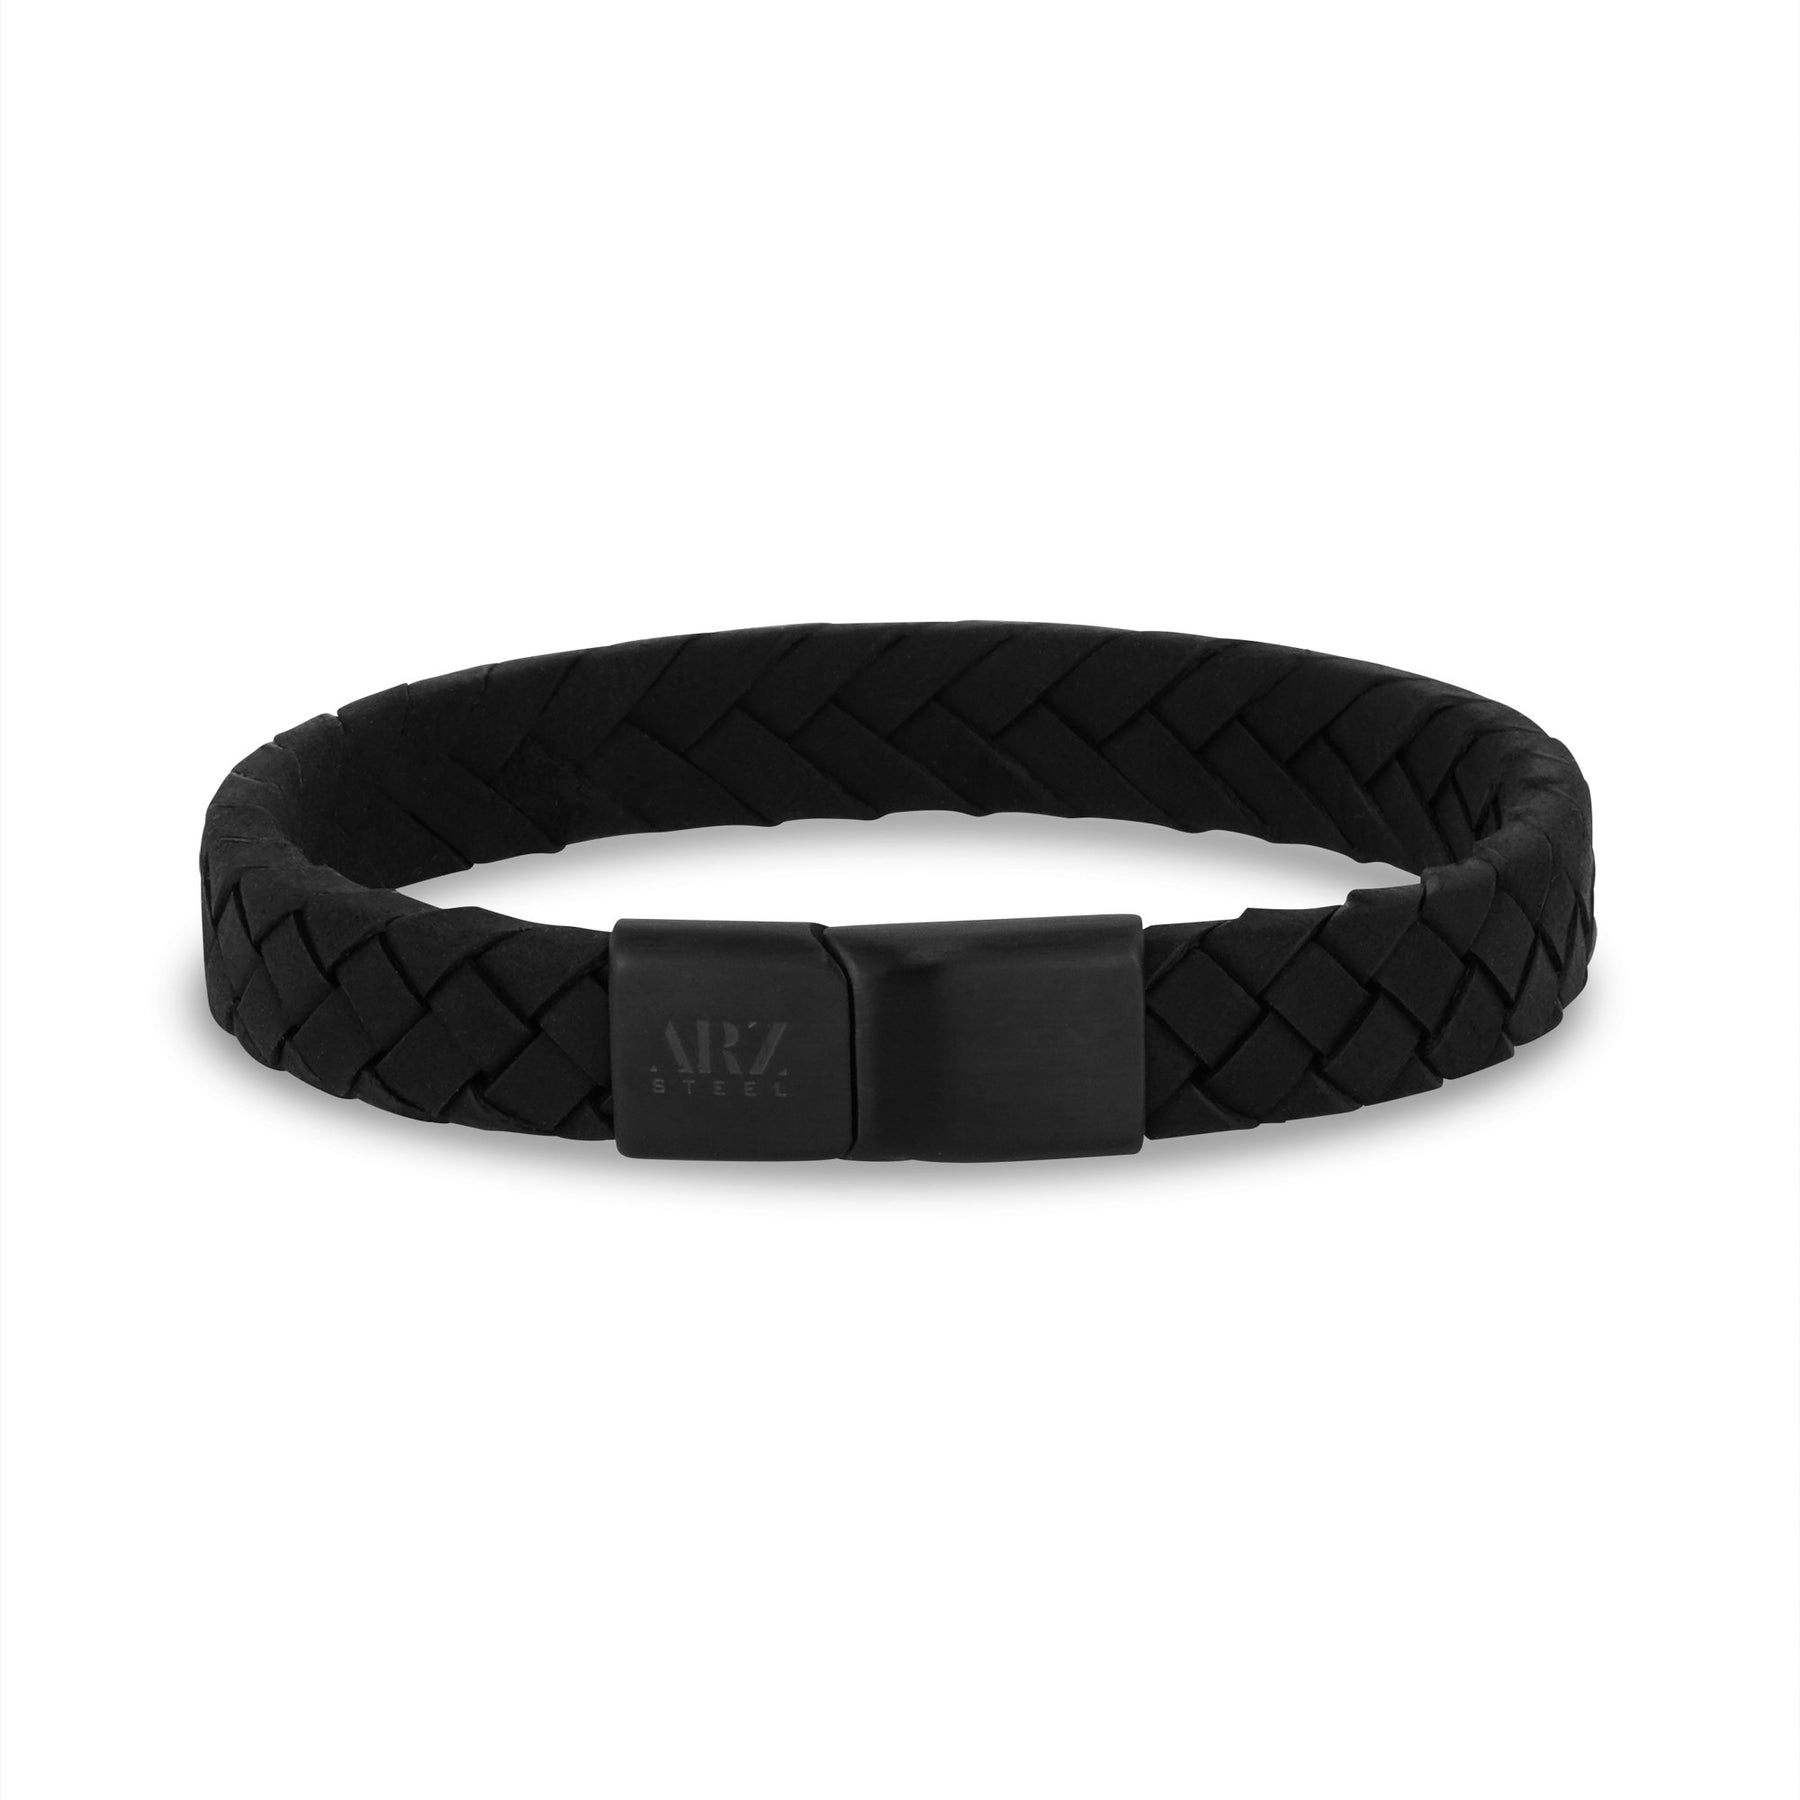 Bracelet Louis Vuitton men's black leather